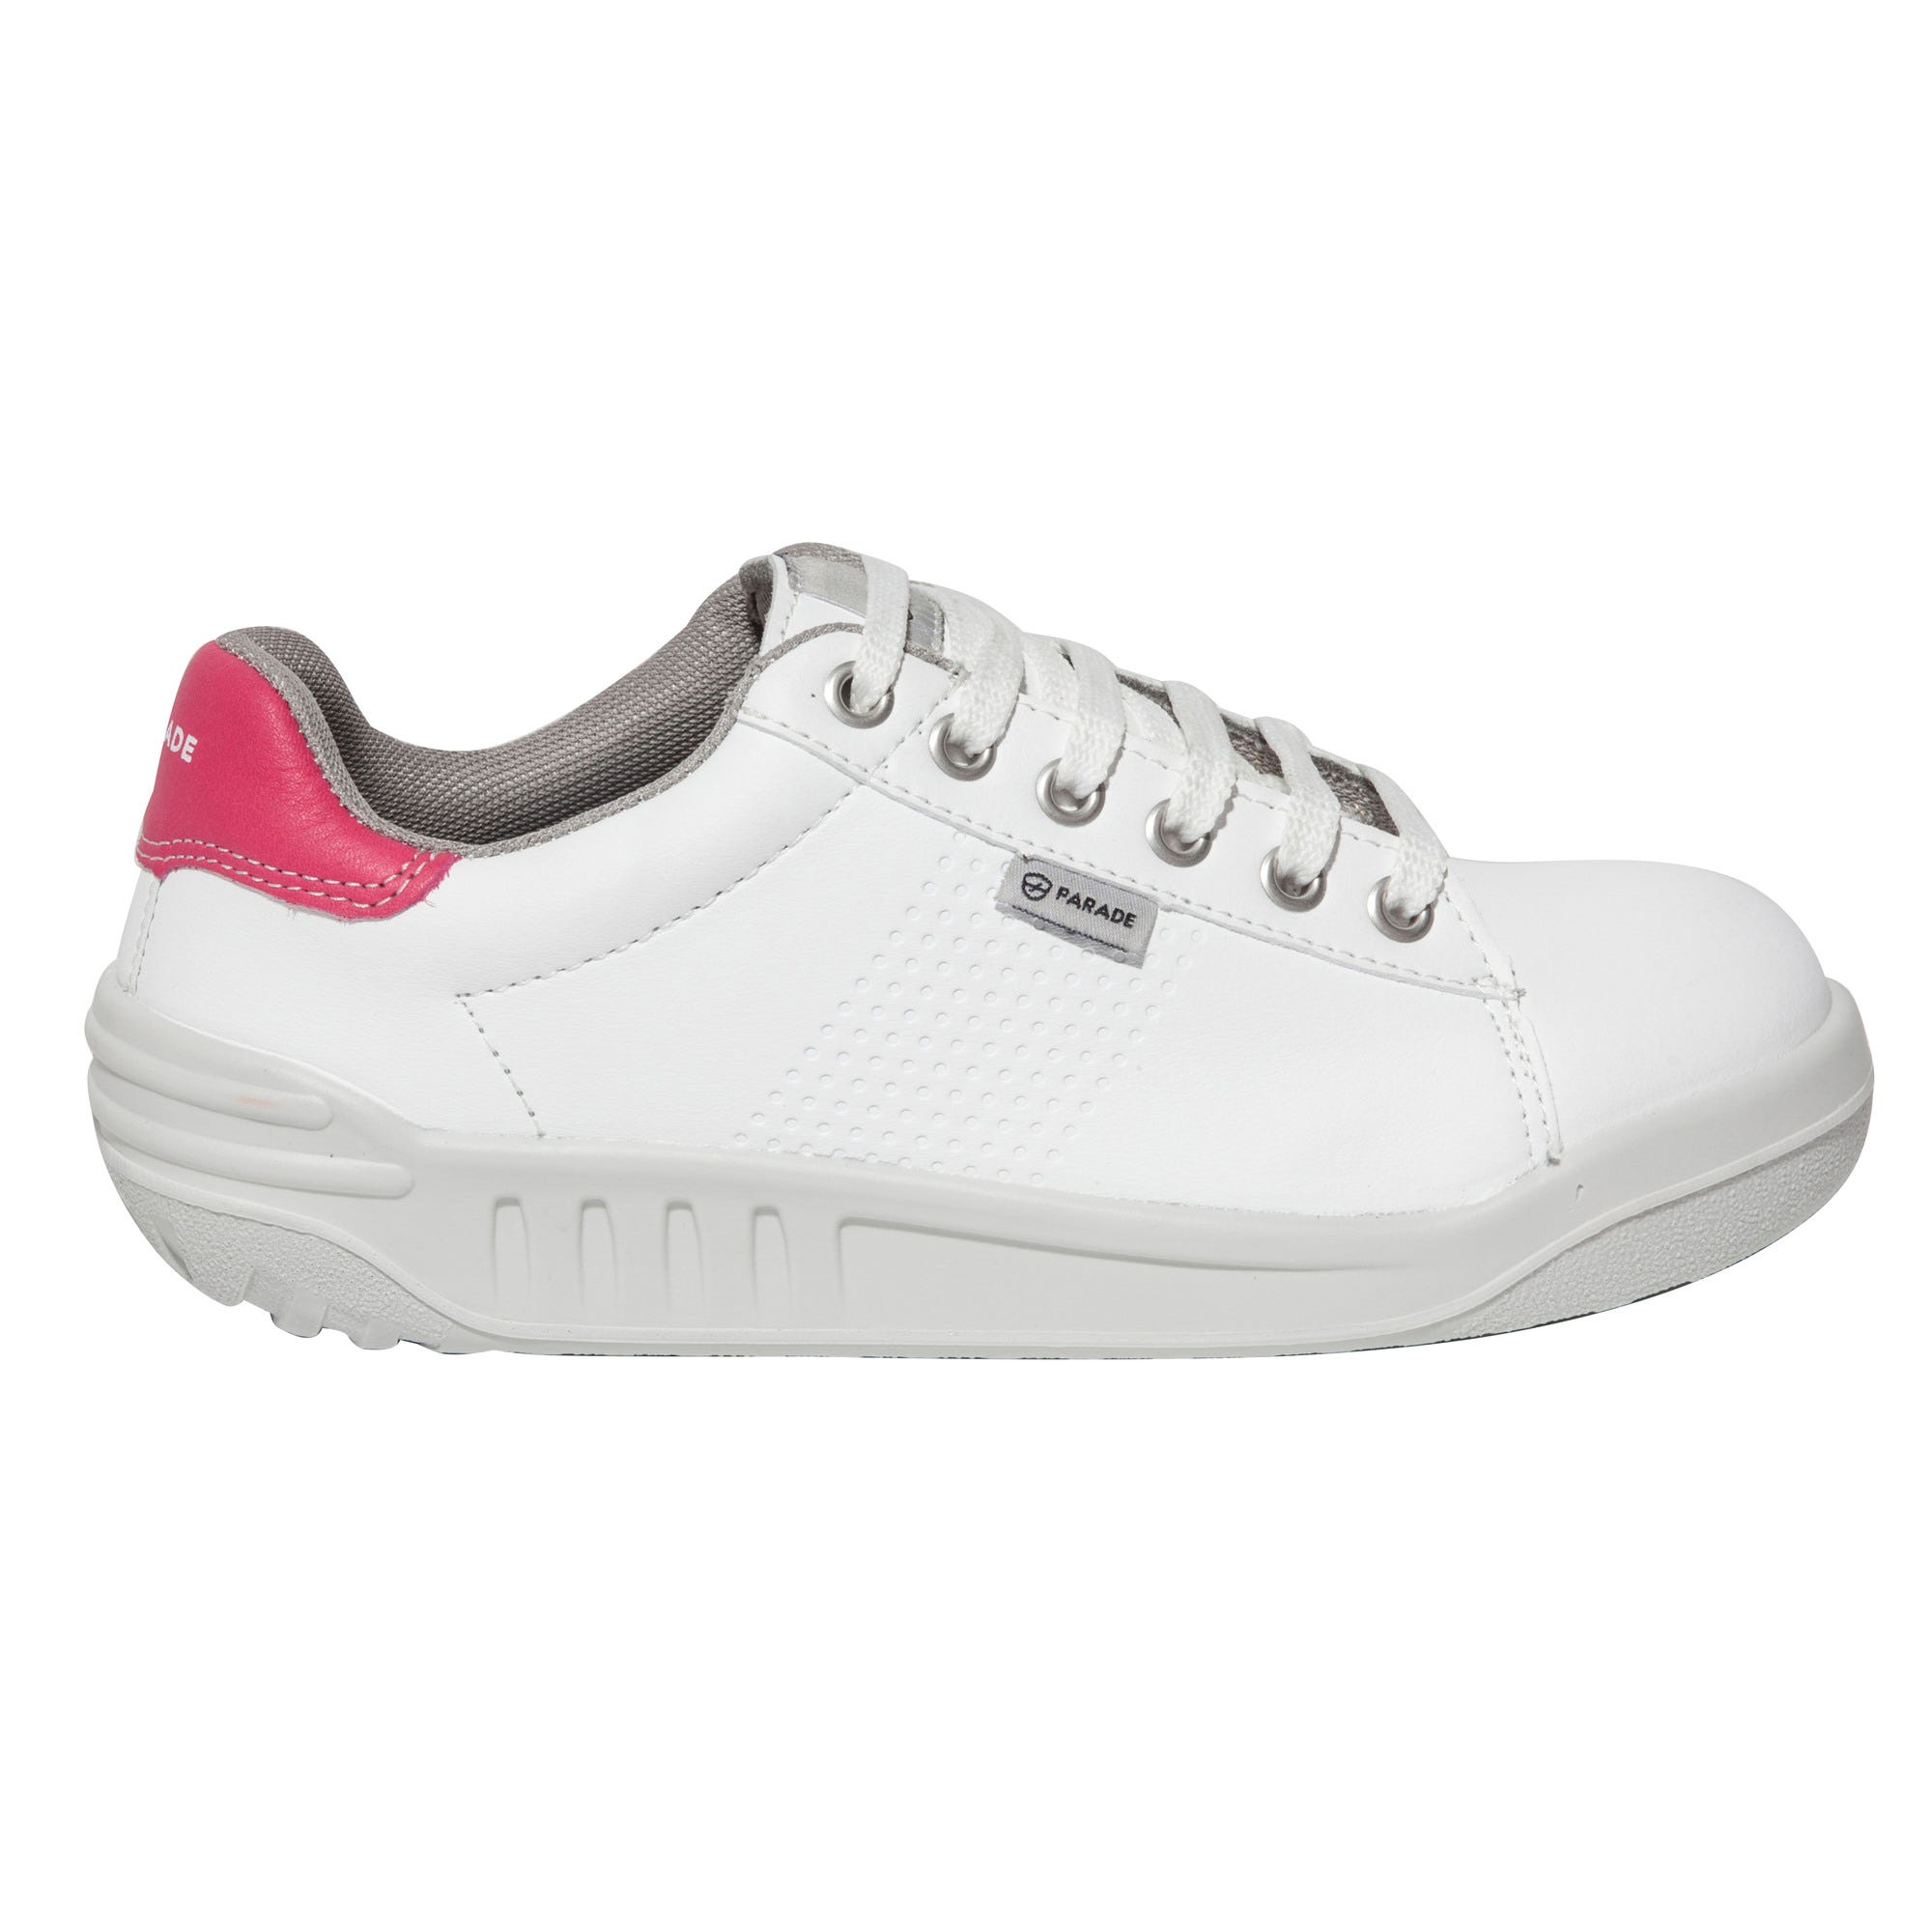 Chaussure de sécurité  basse sport S3 blanc/rose T.40 07jamma*88 96 - PARADE 0